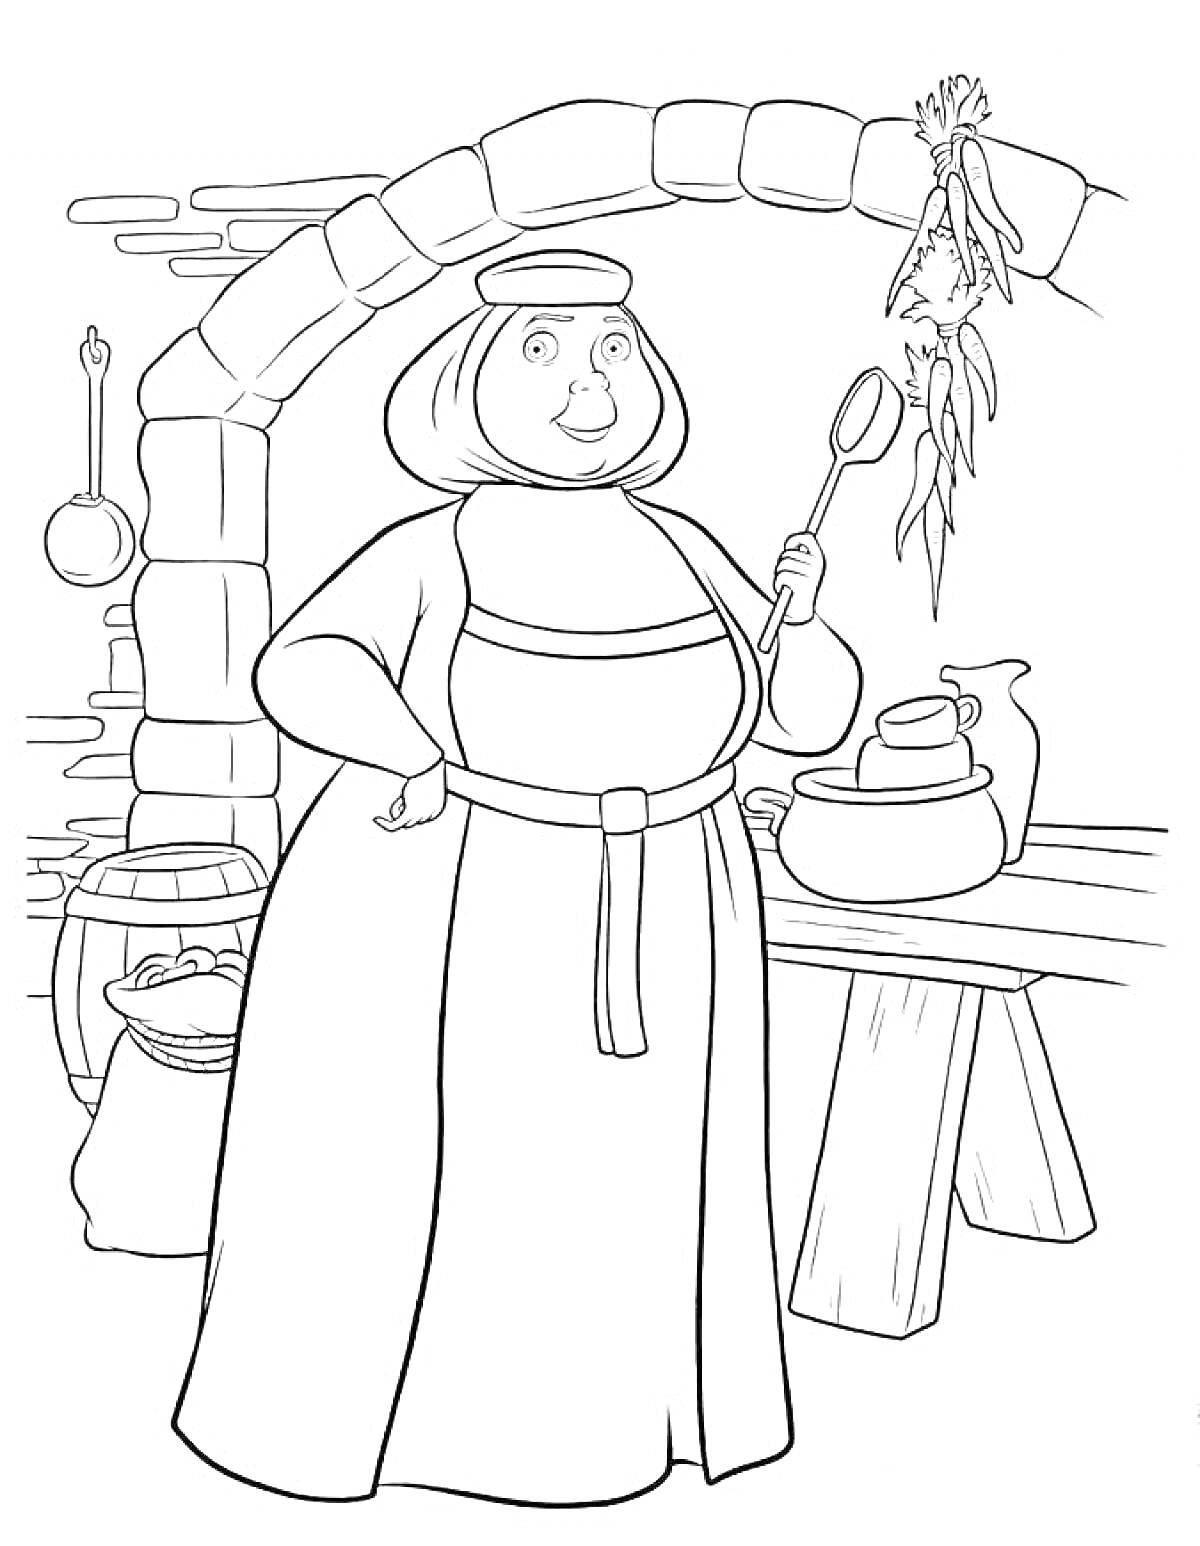 Раскраска Женщина на кухне у печи с поварешкой, окружающие предметы: горшок, мешок, стол, корзина с продуктами, связка трав, сковорода